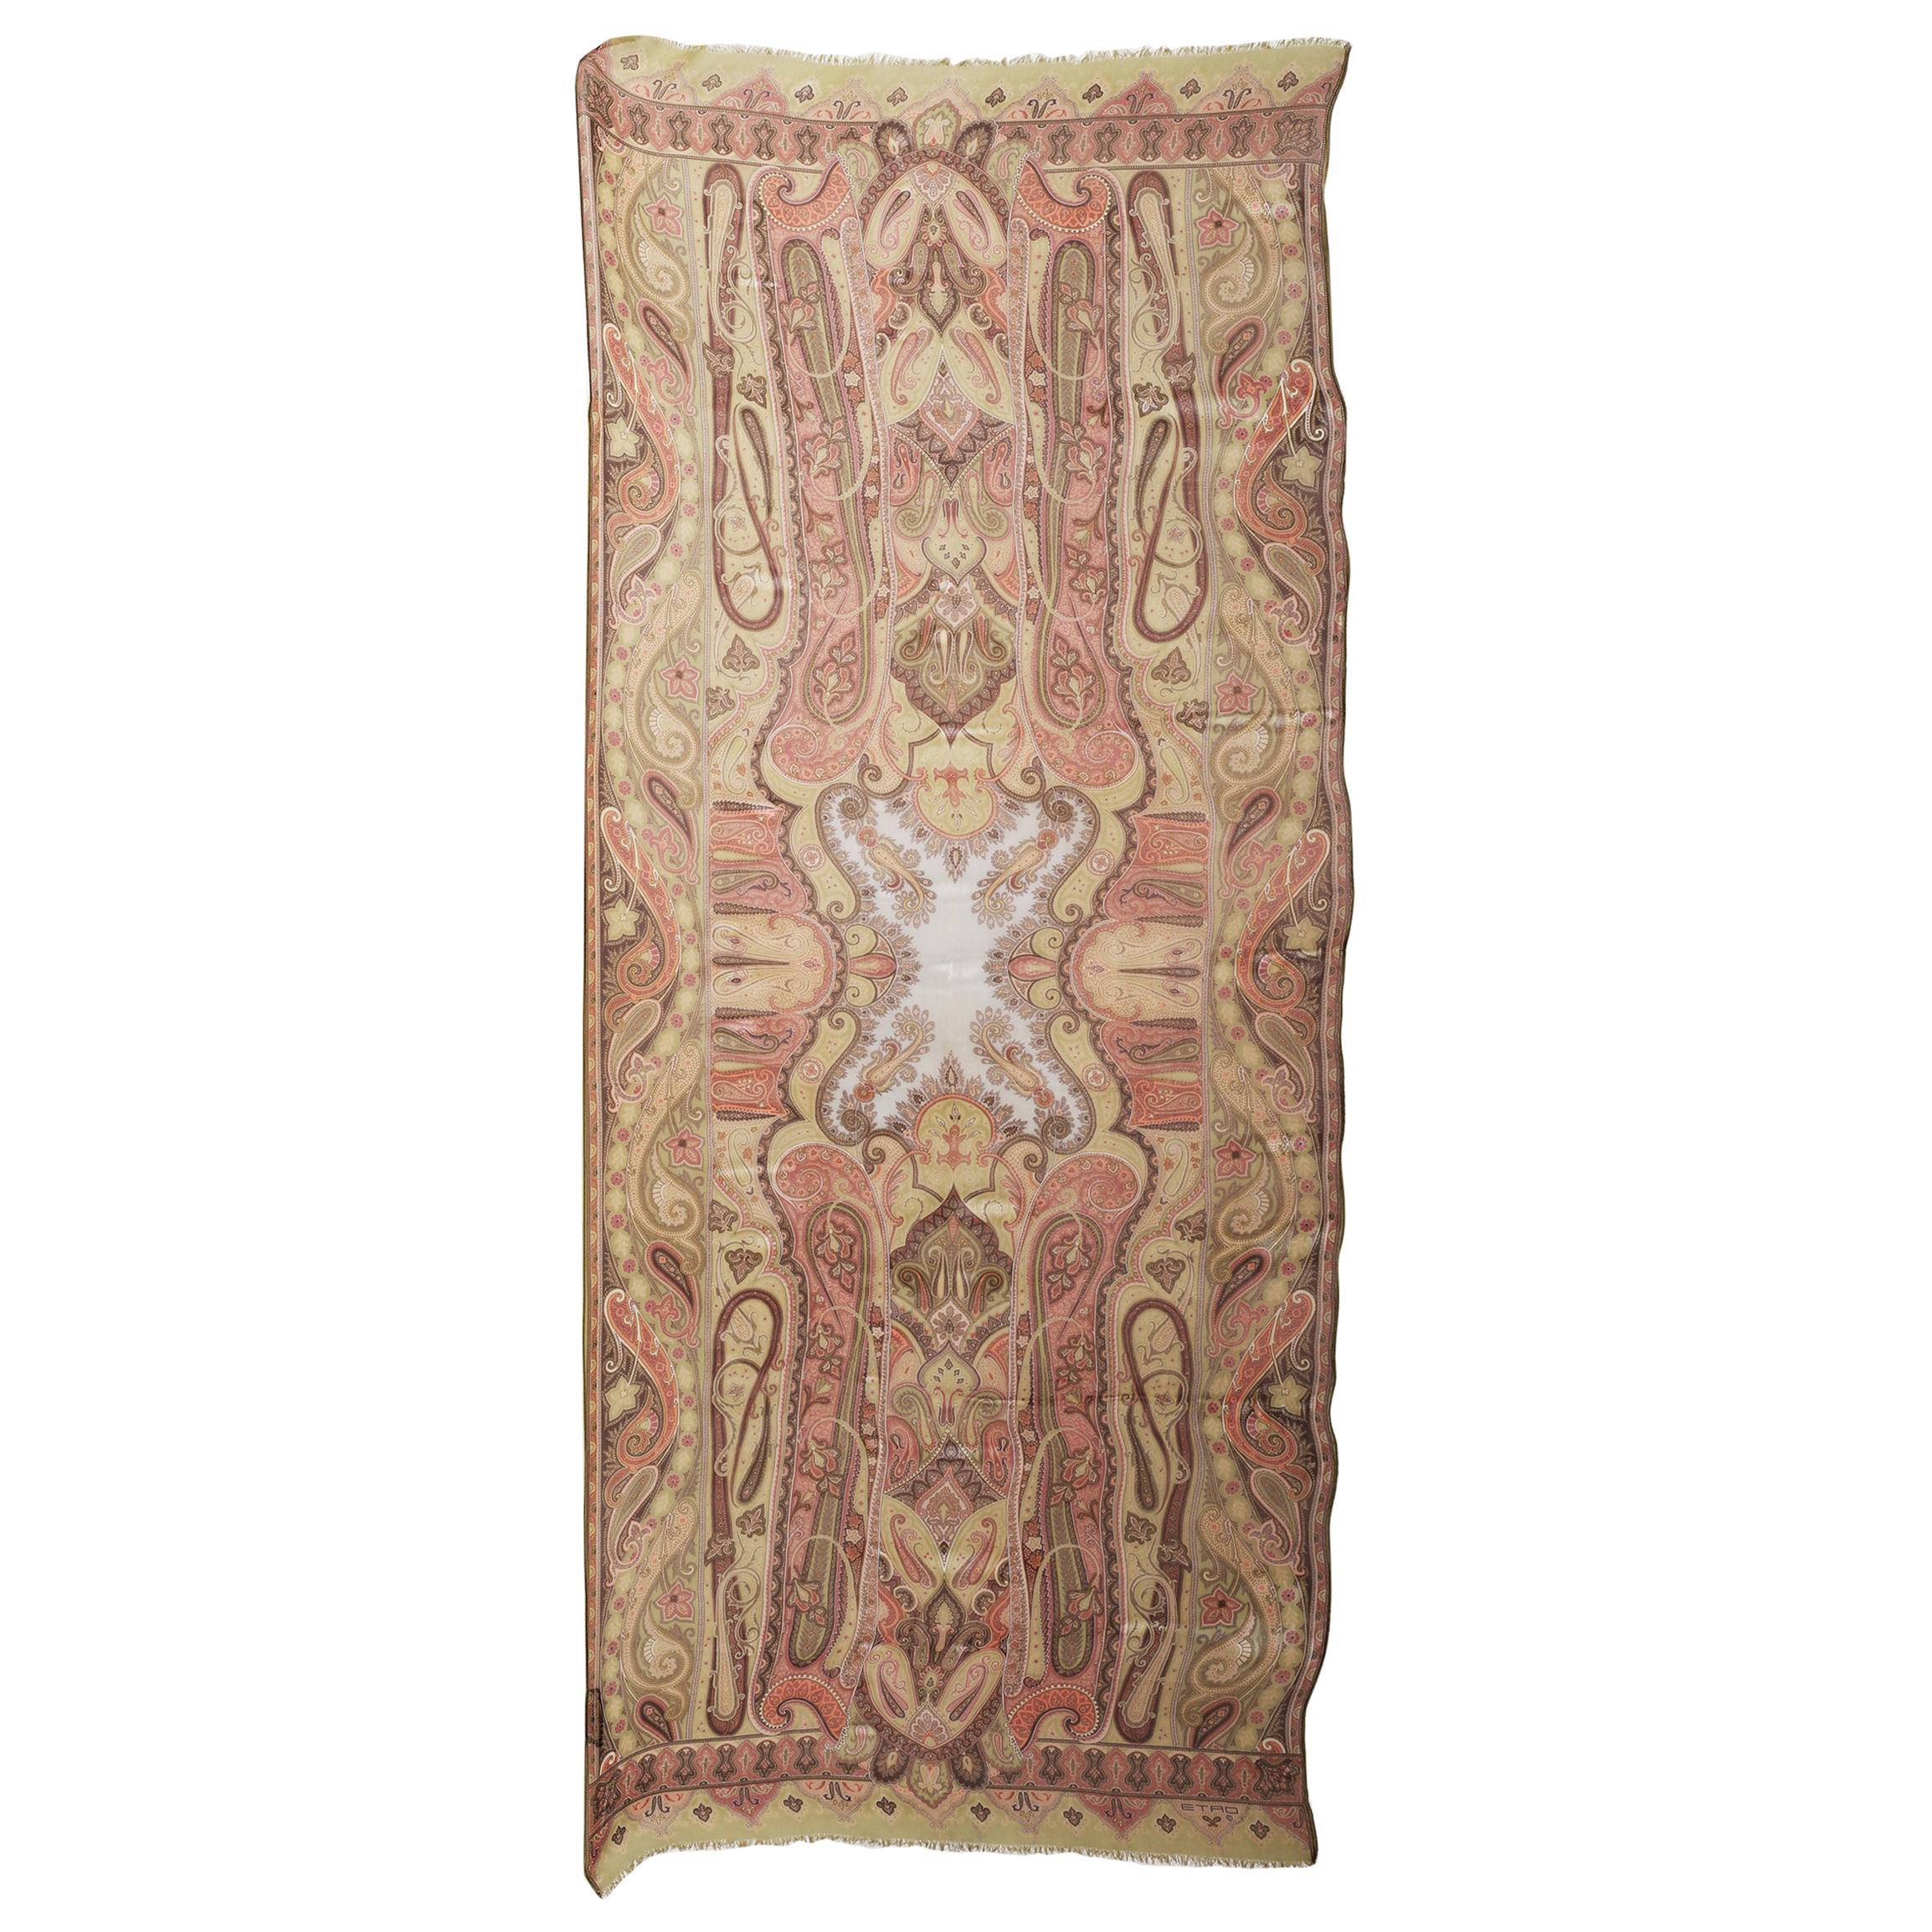  Etro Seidenchiffon-Schal mit wirbelnden Paisleymustern in Pastellgrün